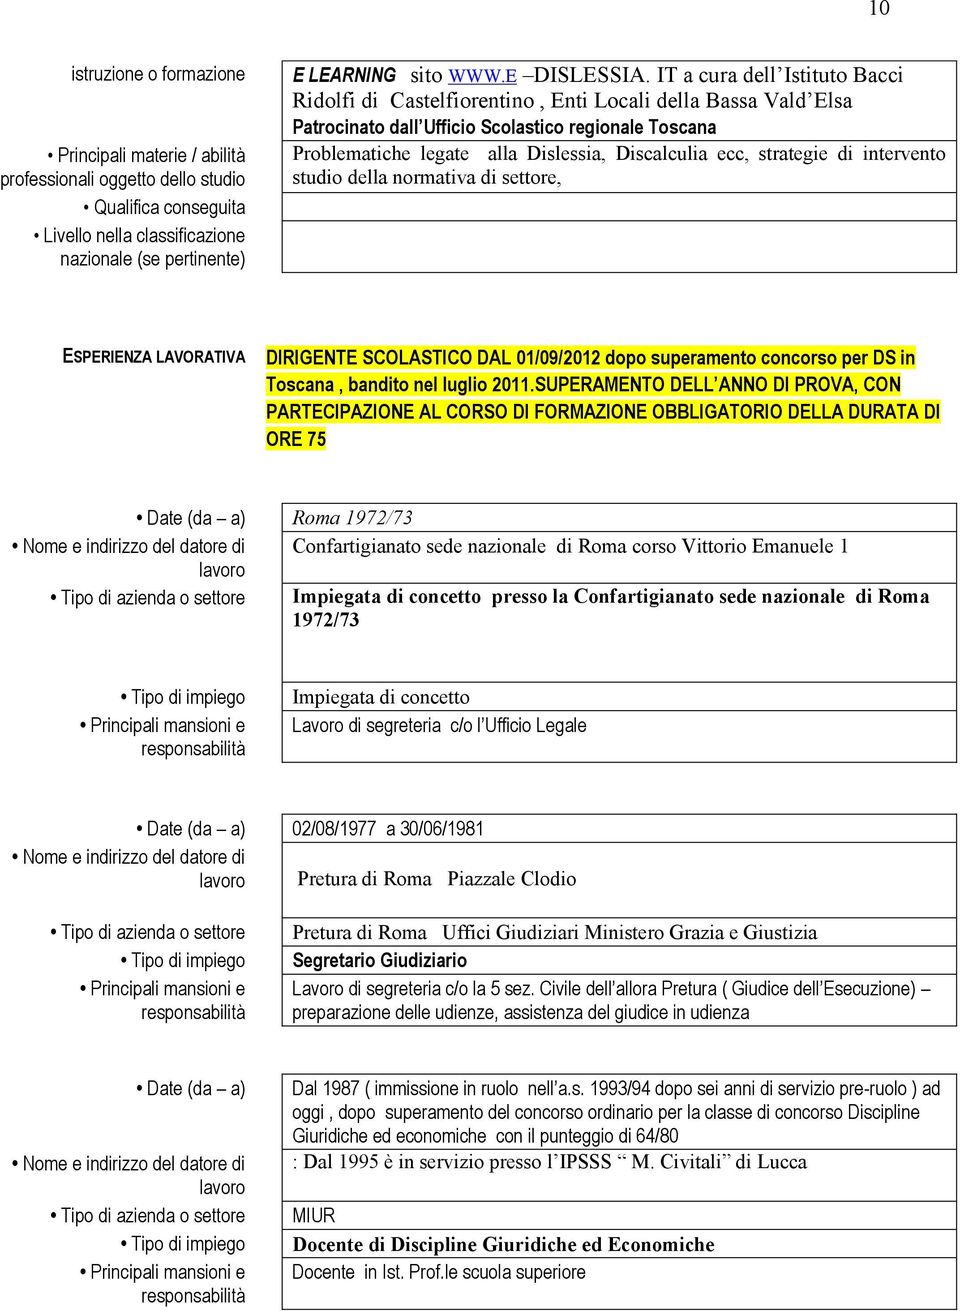 ecc, strategie di intervento studio della normativa di settore, ESPERIENZA LAVORATIVA DIRIGENTE SCOLASTICO DAL 01/09/2012 dopo superamento concorso per DS in Toscana, bandito nel luglio 2011.